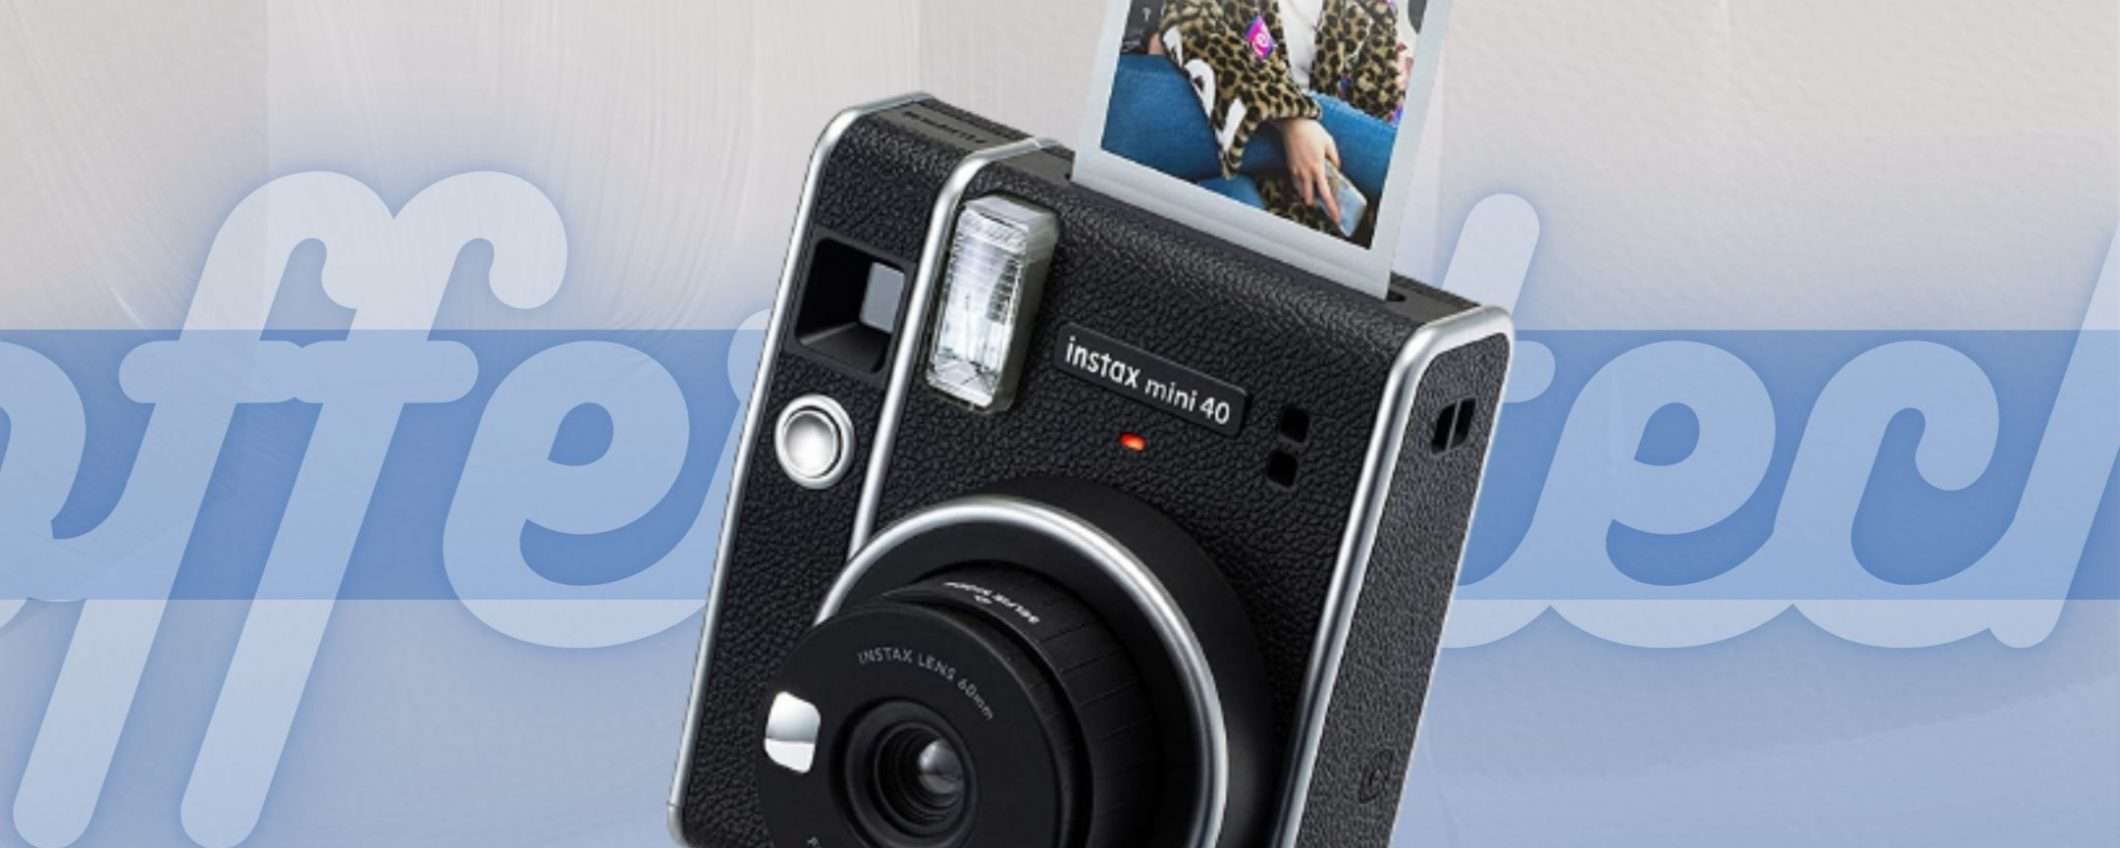 Instax Mini 40: le foto le scatti e le stampi in un secondo